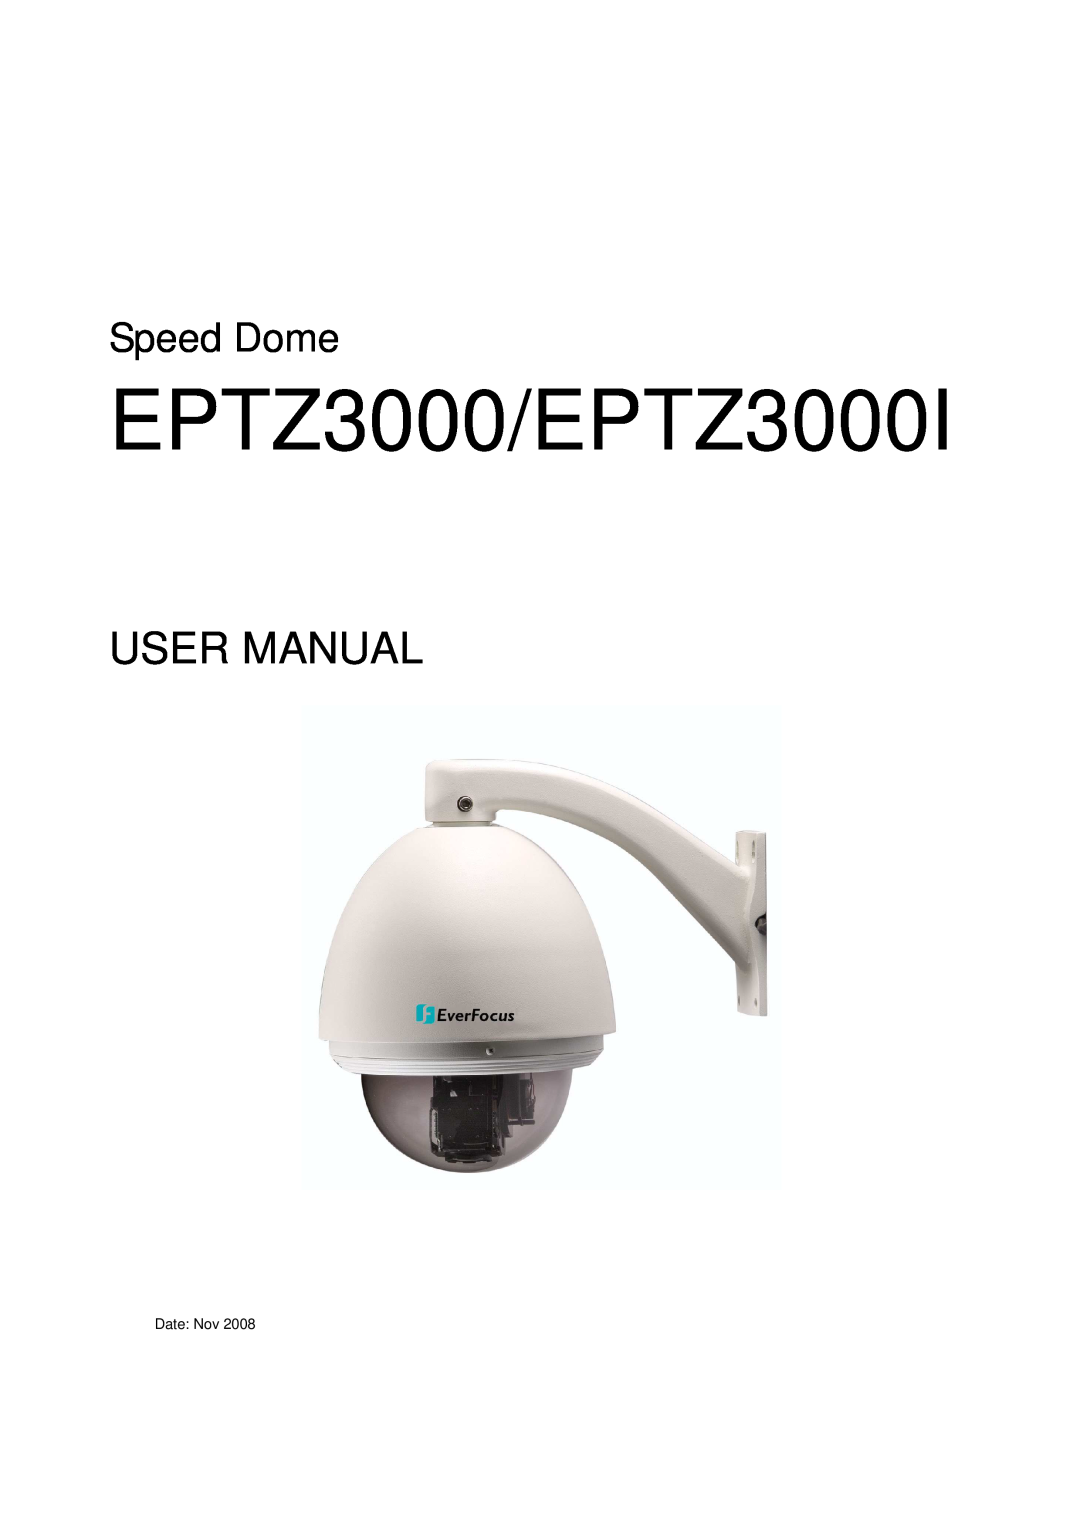 EverFocus Eptz3000 user manual EPTZ3000/EPTZ3000I, User Manual, Speed Dome 